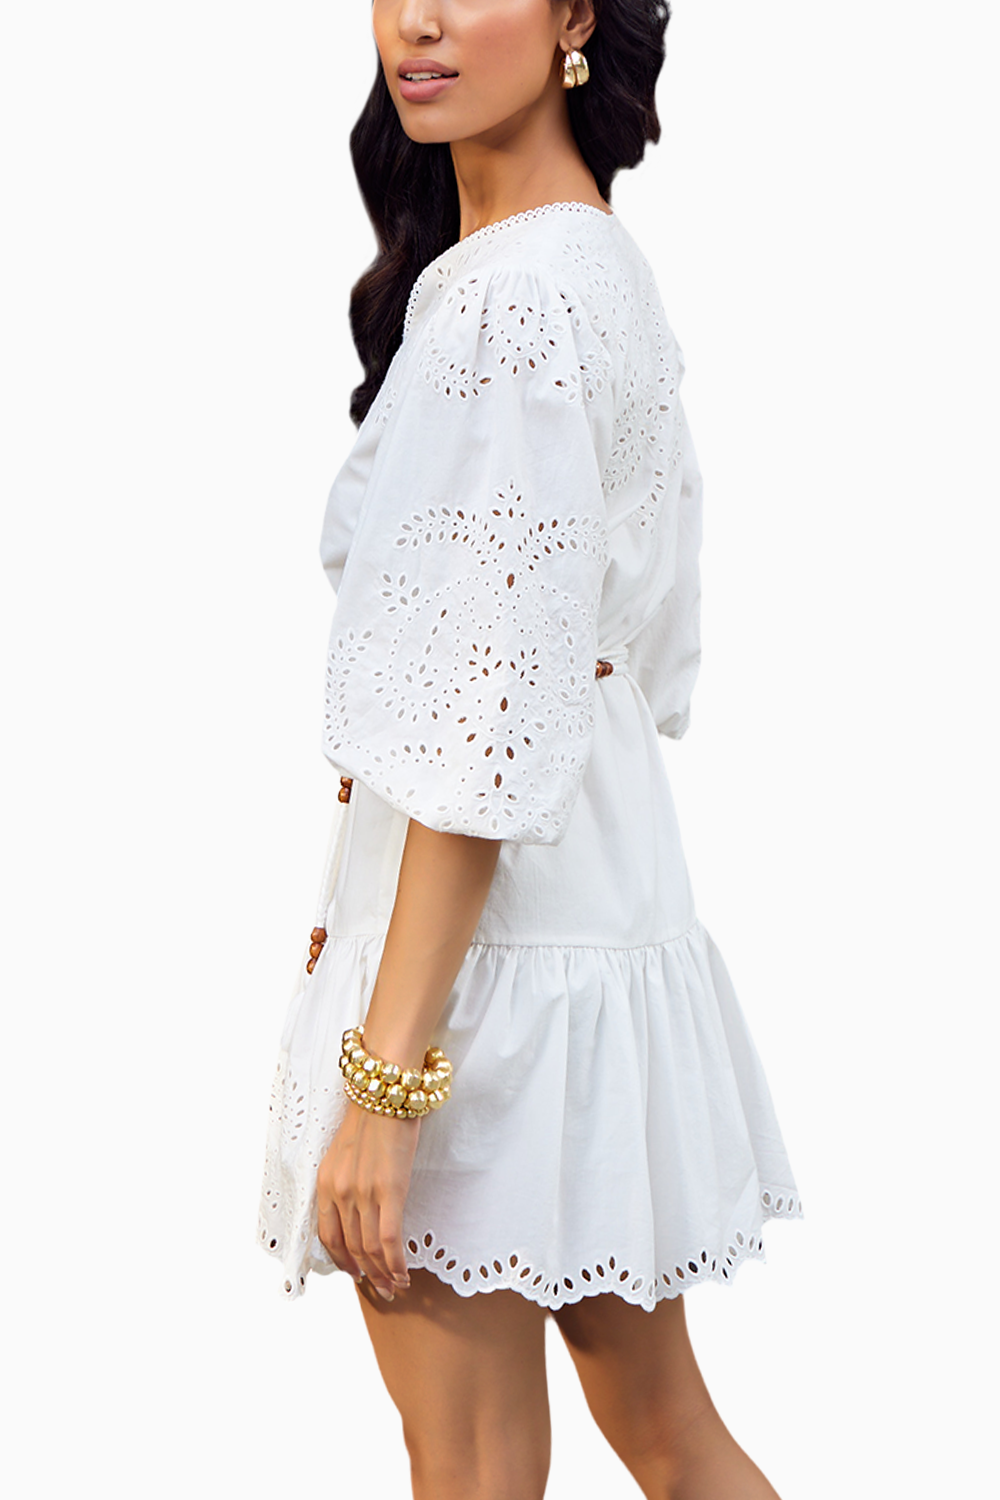 Clarkia White Mini Dress